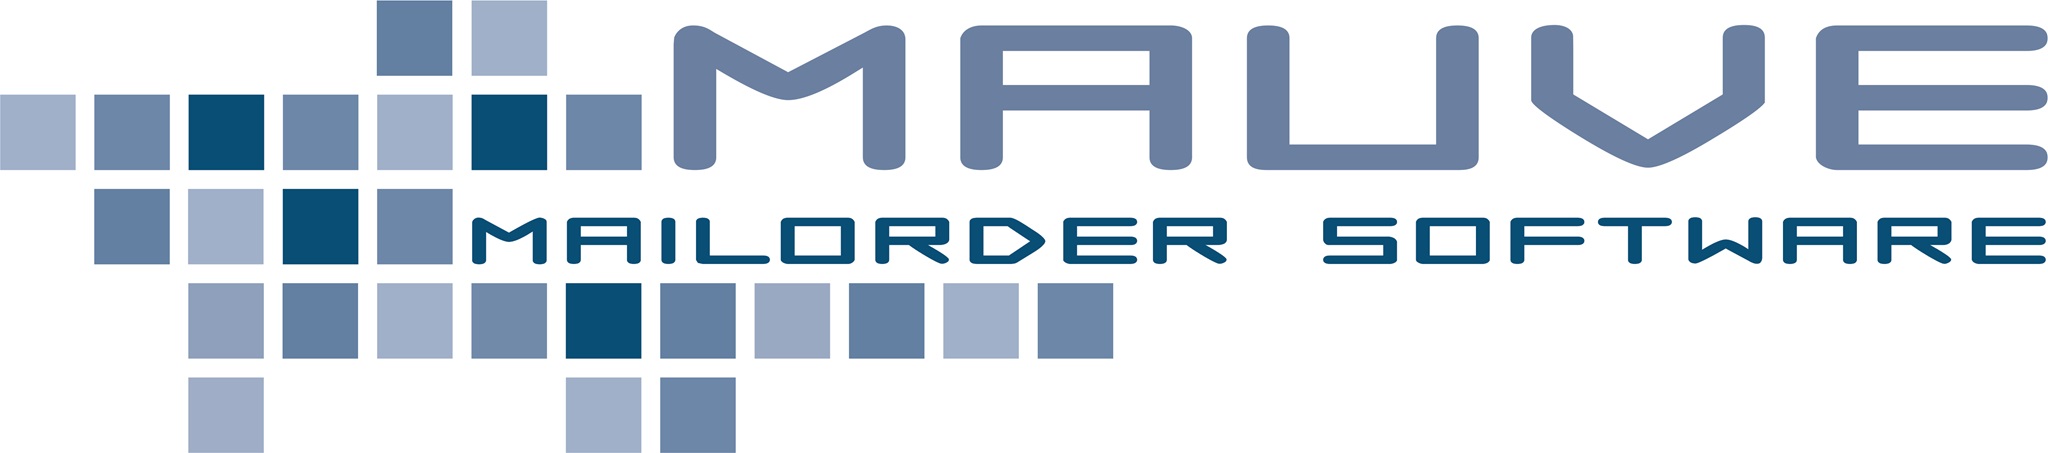 Mauve Logo